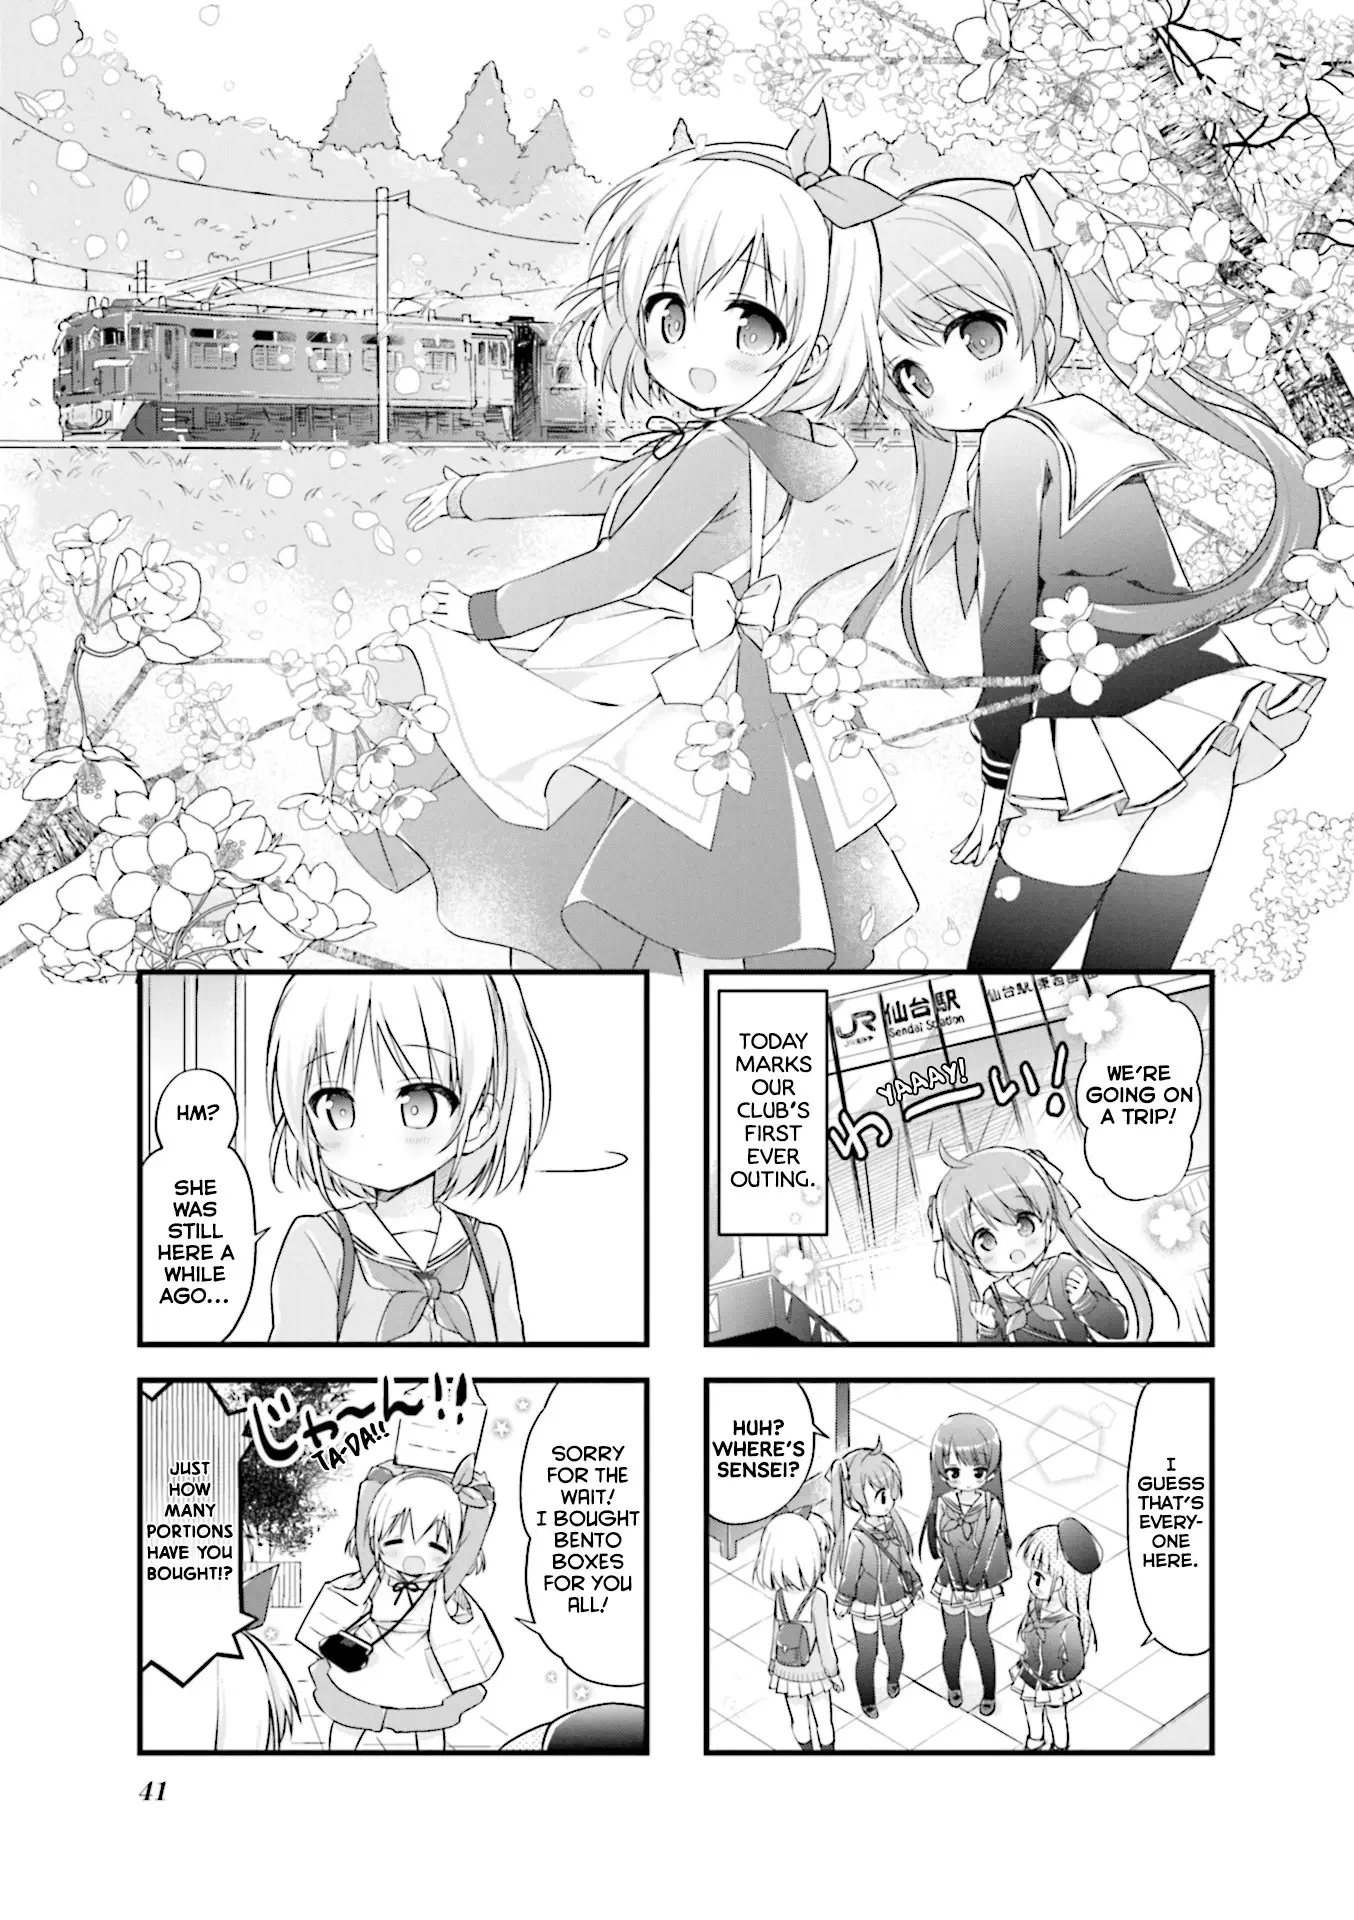 Hatsukoi*rail Trip - 5 page 1